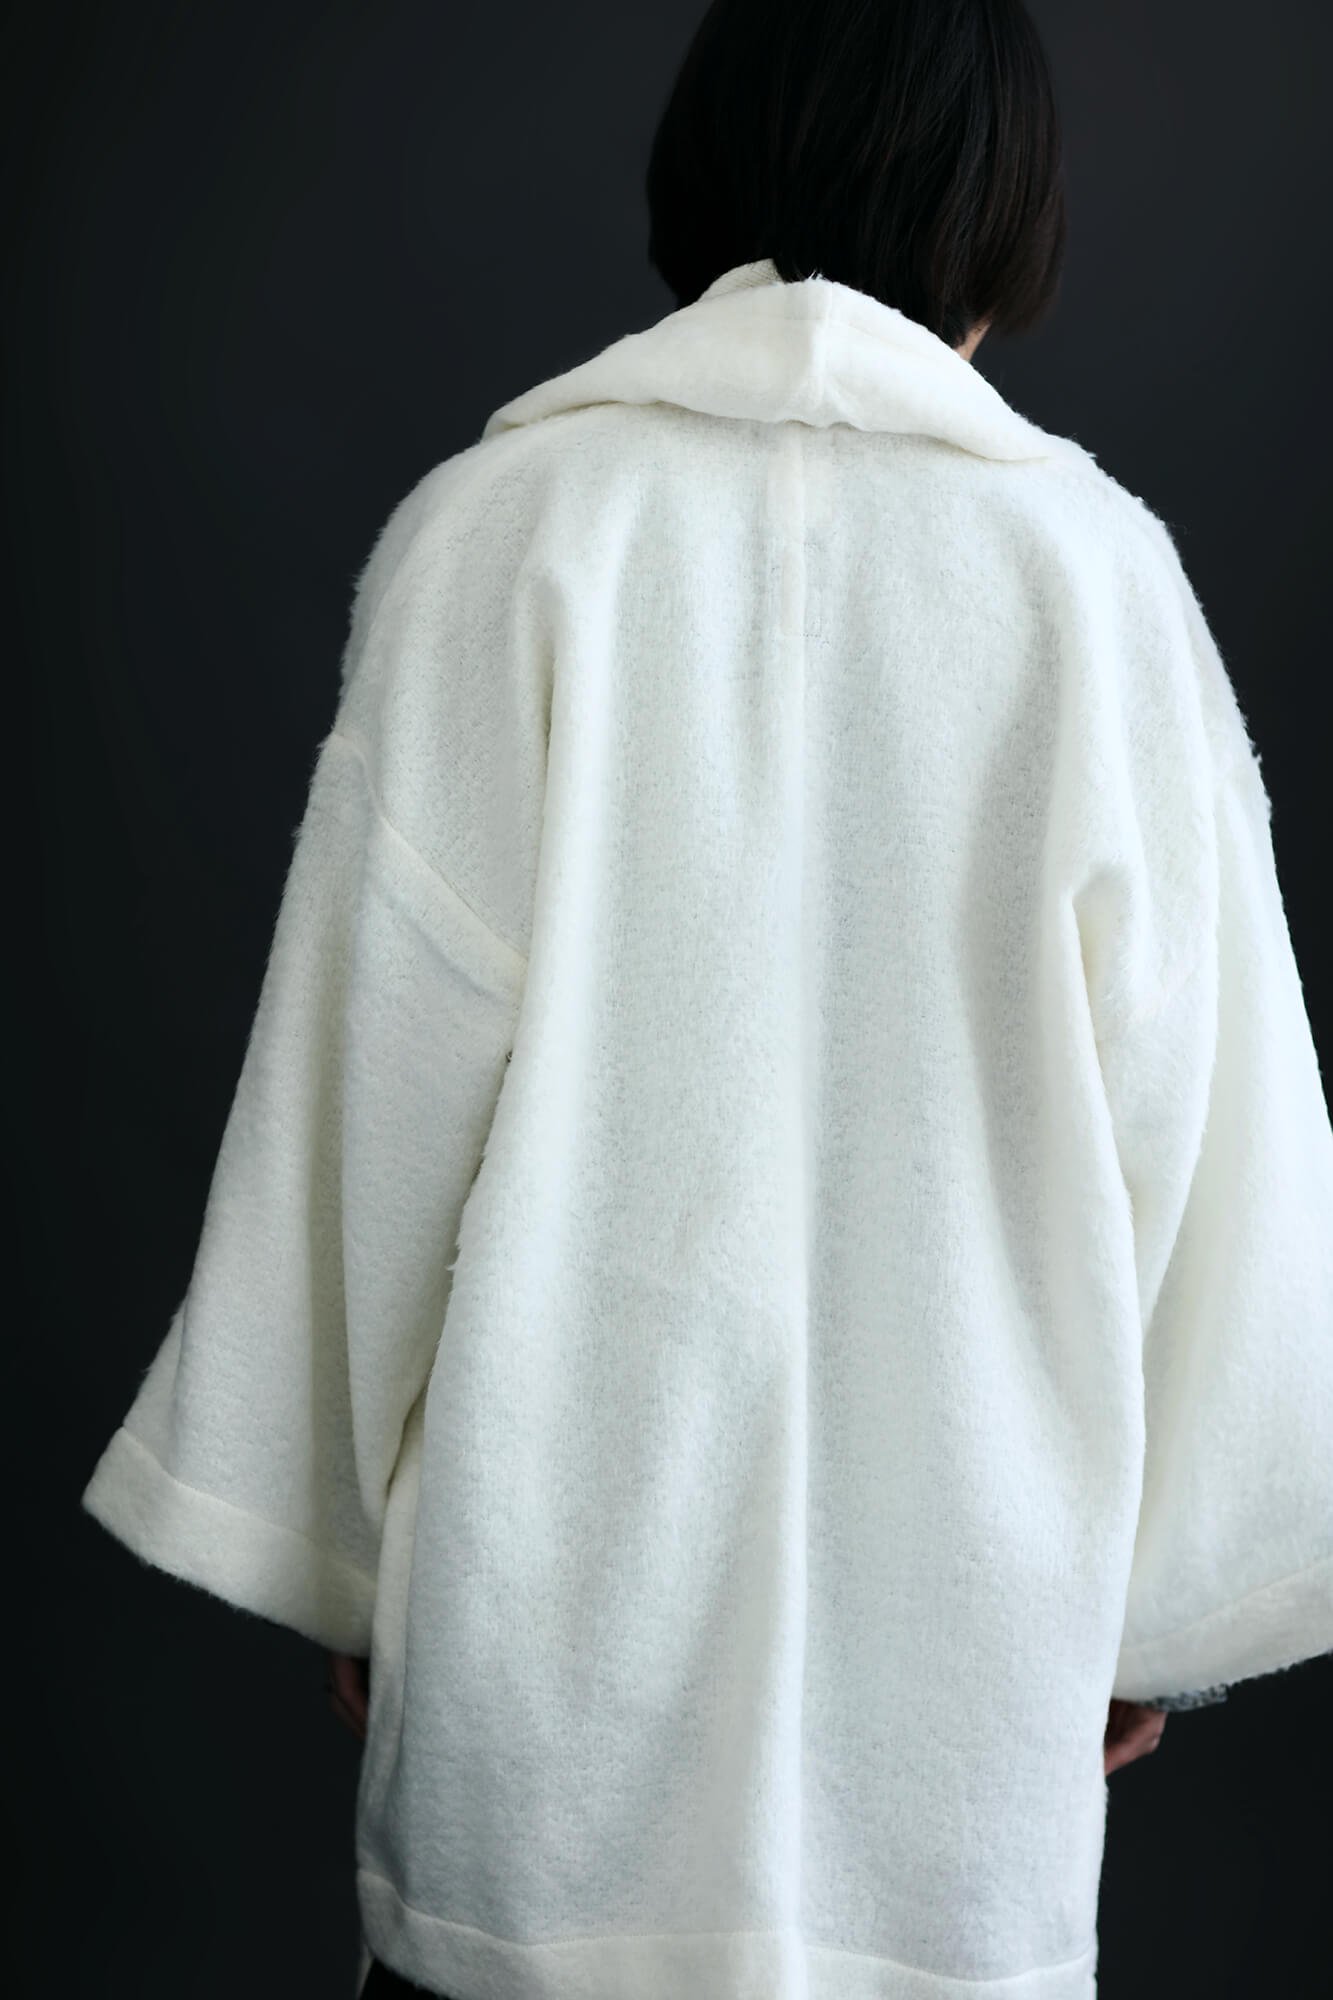 傾衣 頭巾外套 - SOU・SOU netshop （ソウソウ） - 『新しい日本文化の 